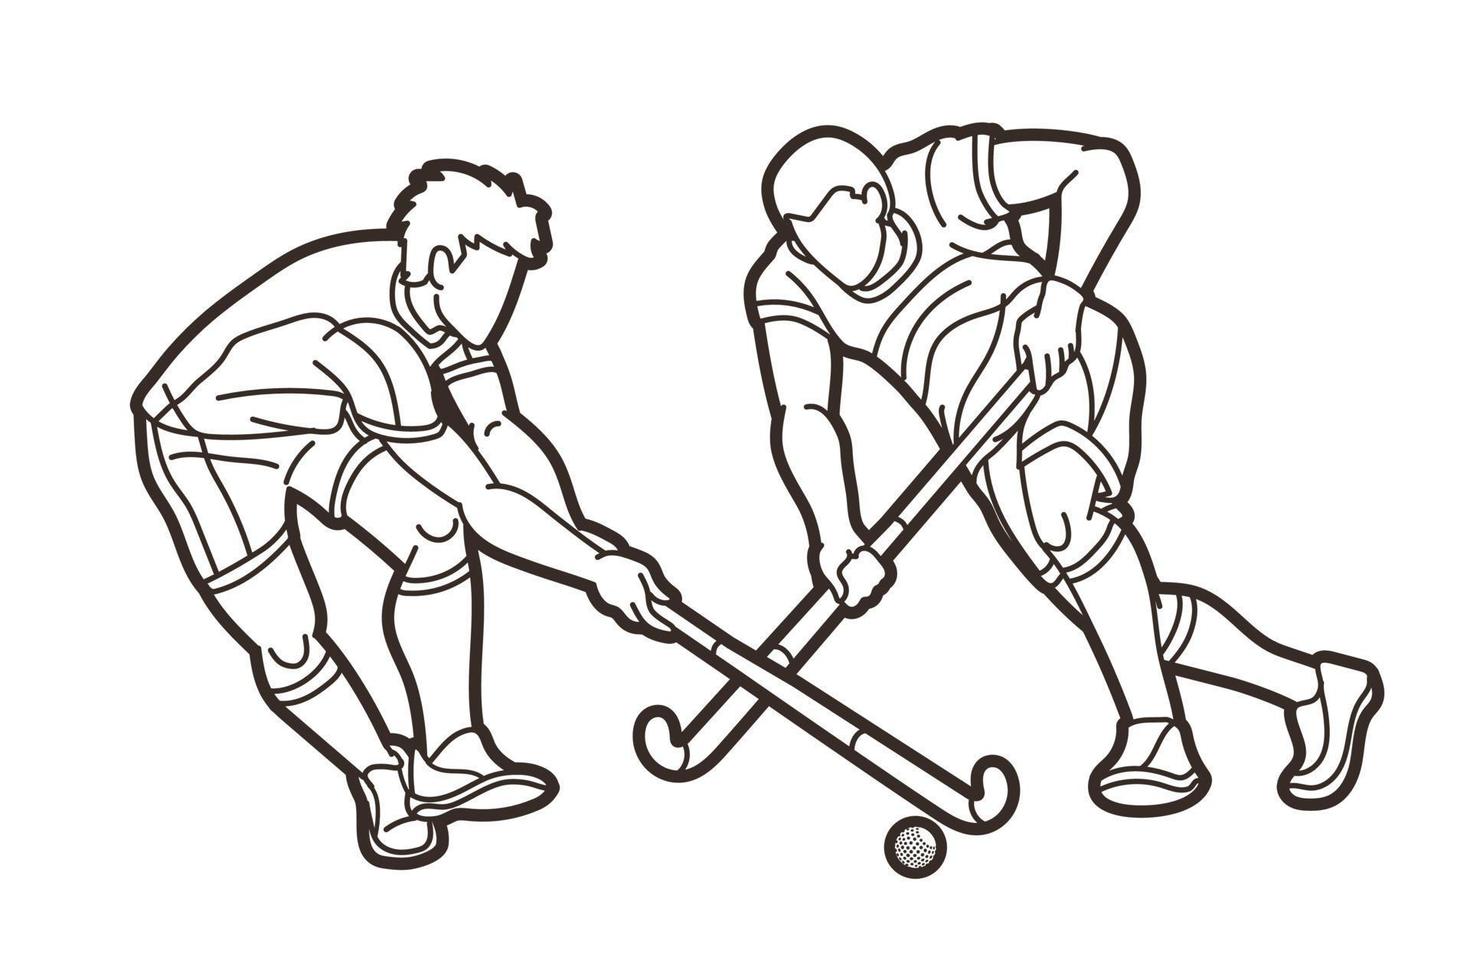 skizzieren Feldhockey Sport männliche Spieler vektor